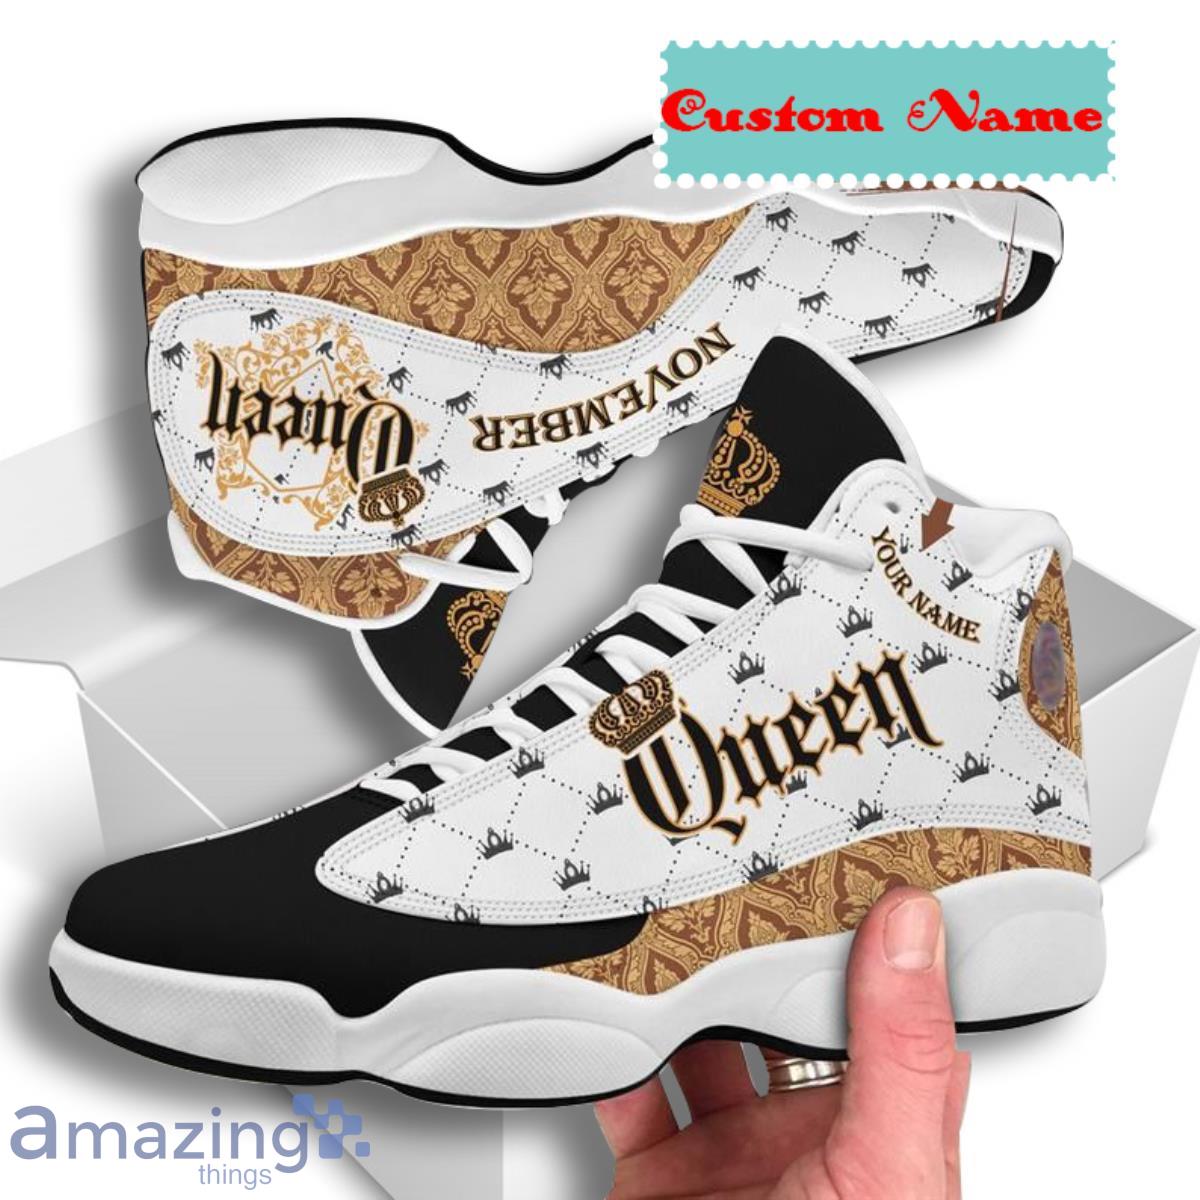 Custom Name Queen Are Born In September Shoes Sneakers Air Jordan